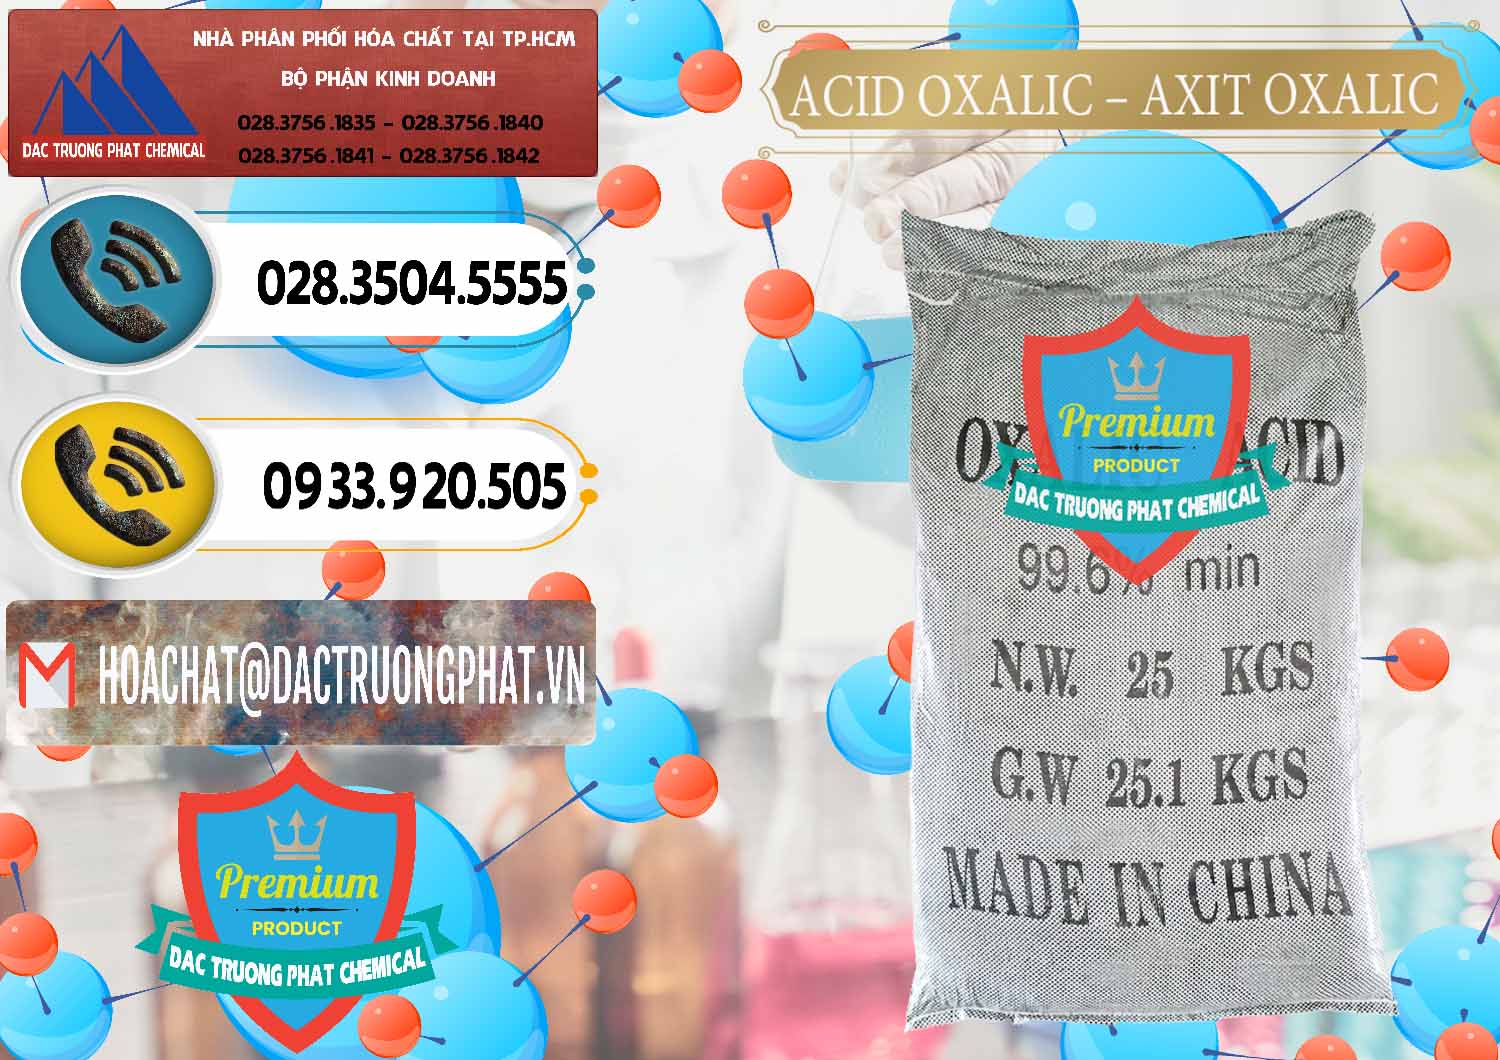 Cty bán _ cung ứng Acid Oxalic – Axit Oxalic 99.6% Trung Quốc China - 0014 - Phân phối & cung cấp hóa chất tại TP.HCM - hoachatdetnhuom.vn